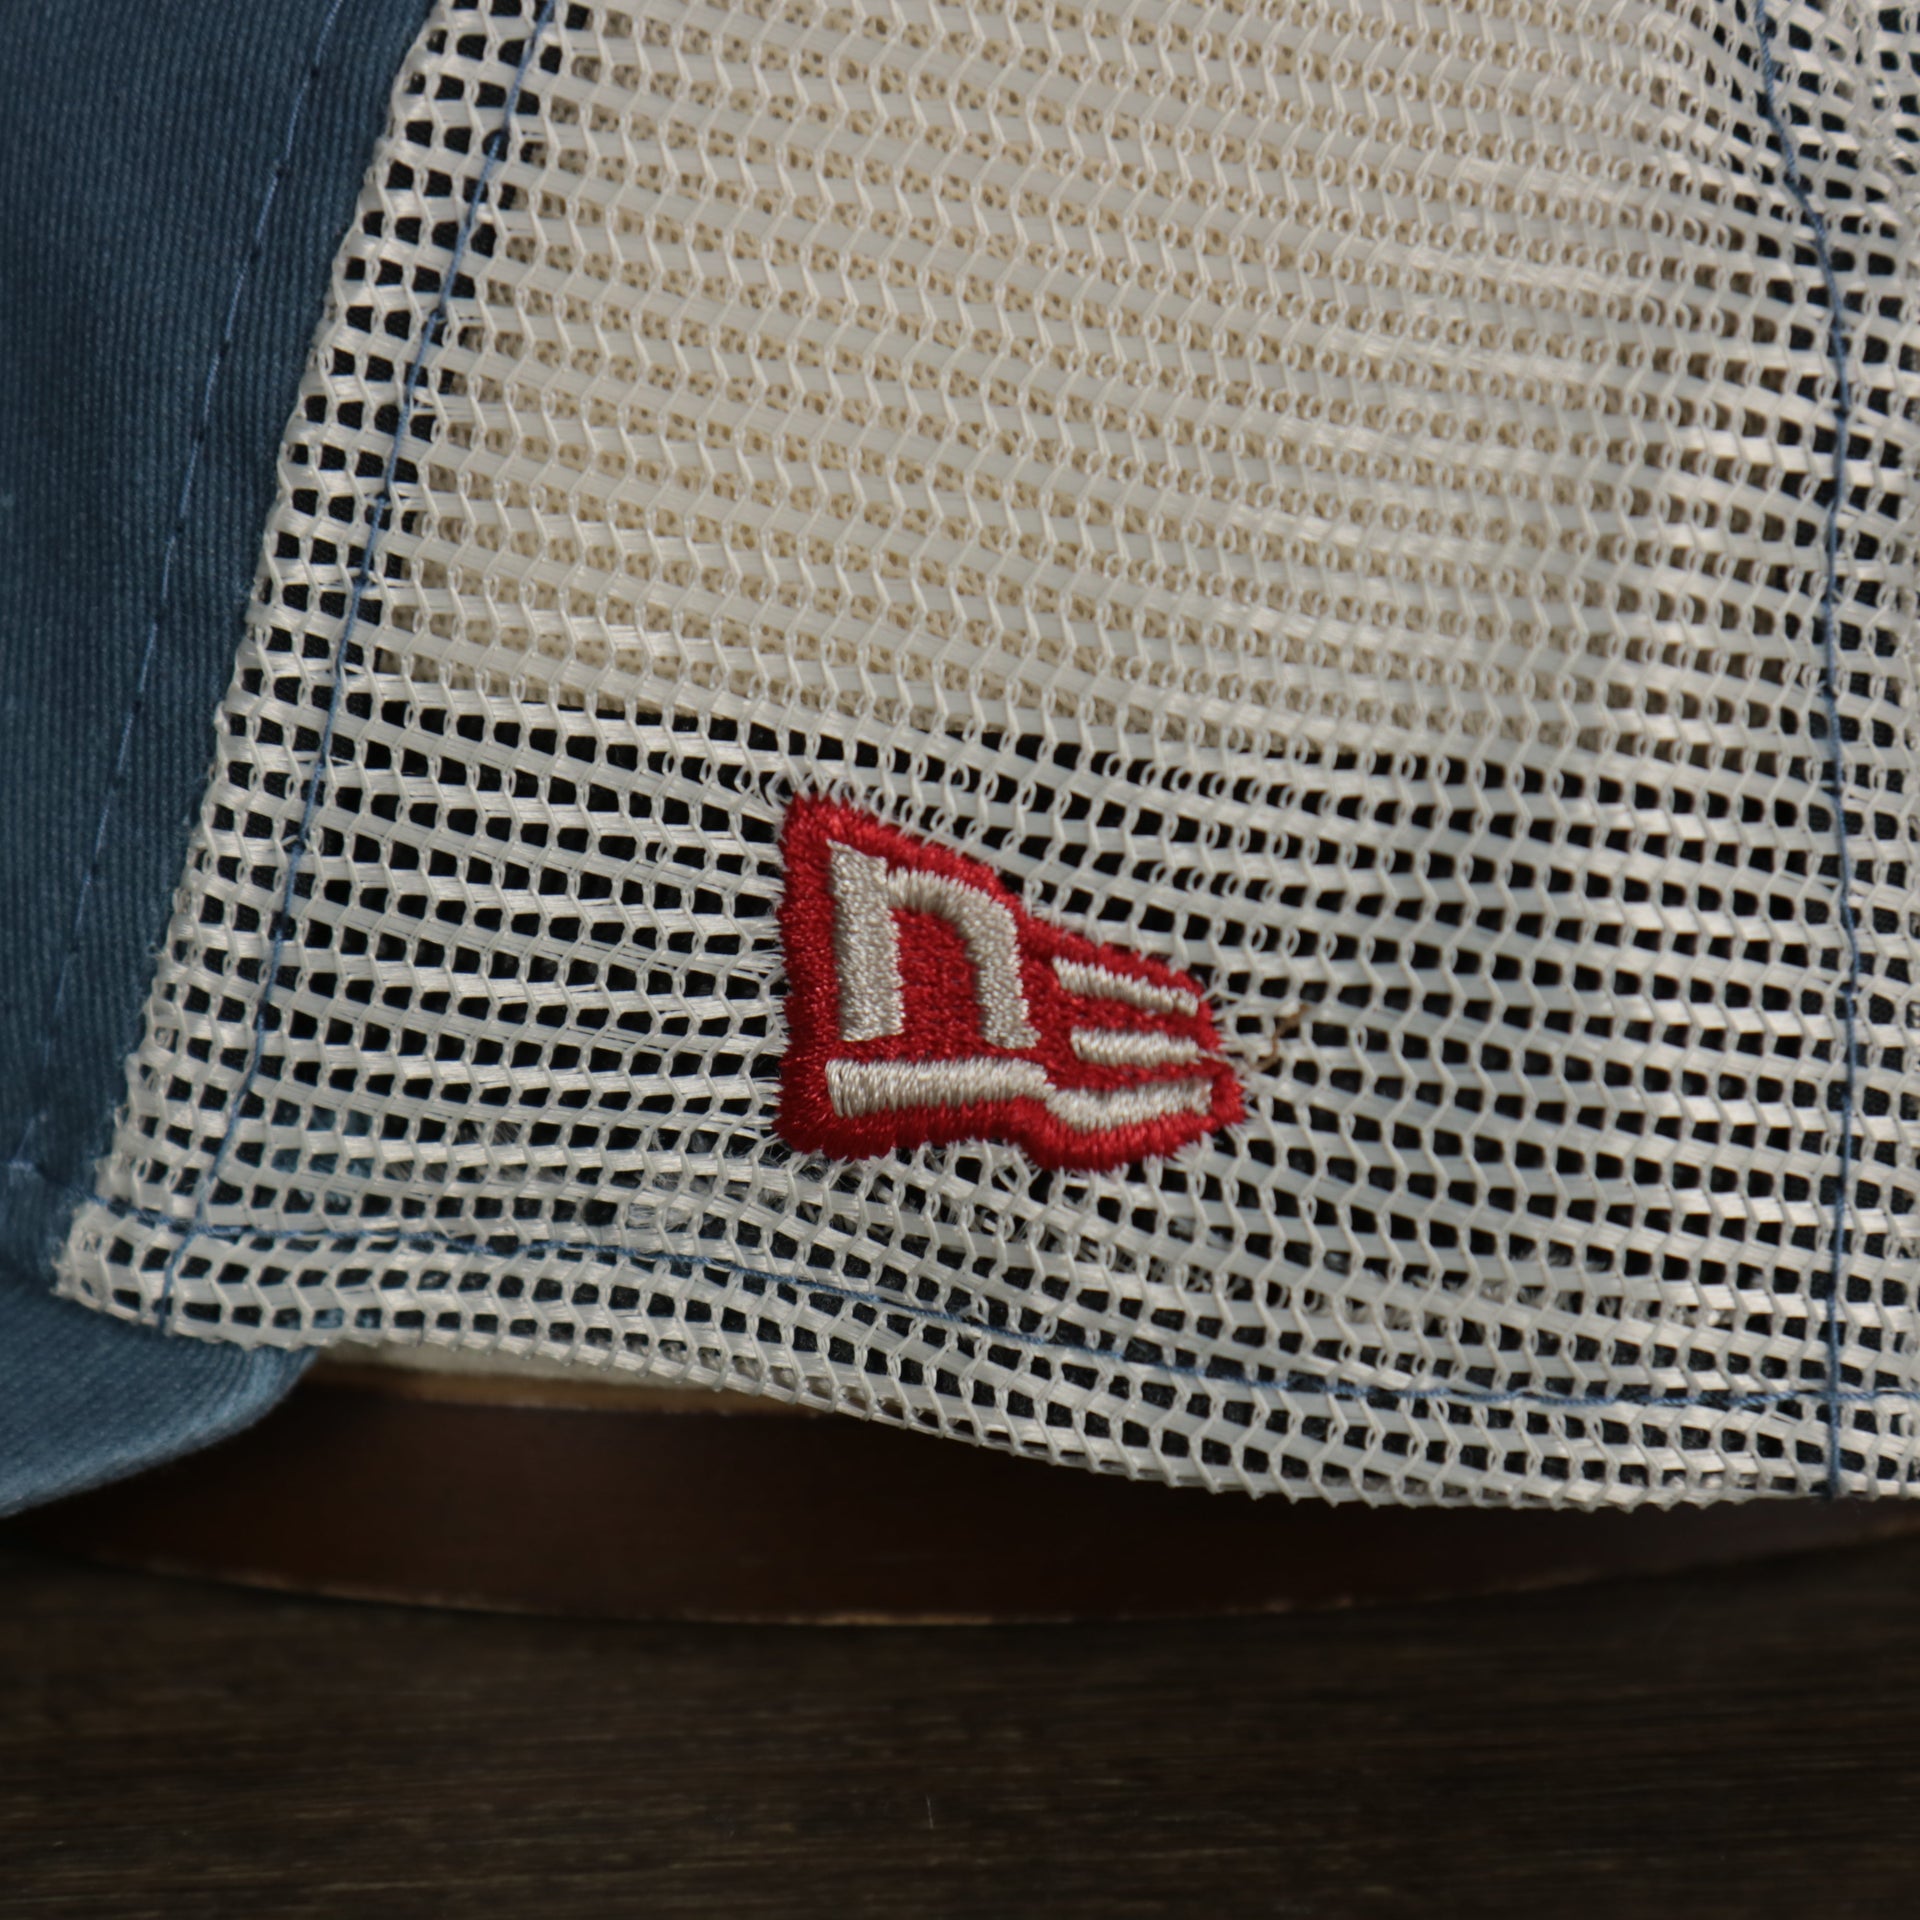 A close up of the New Era logo on the Philadelphia 76ers New Era 9Twenty Washed Trucker hat